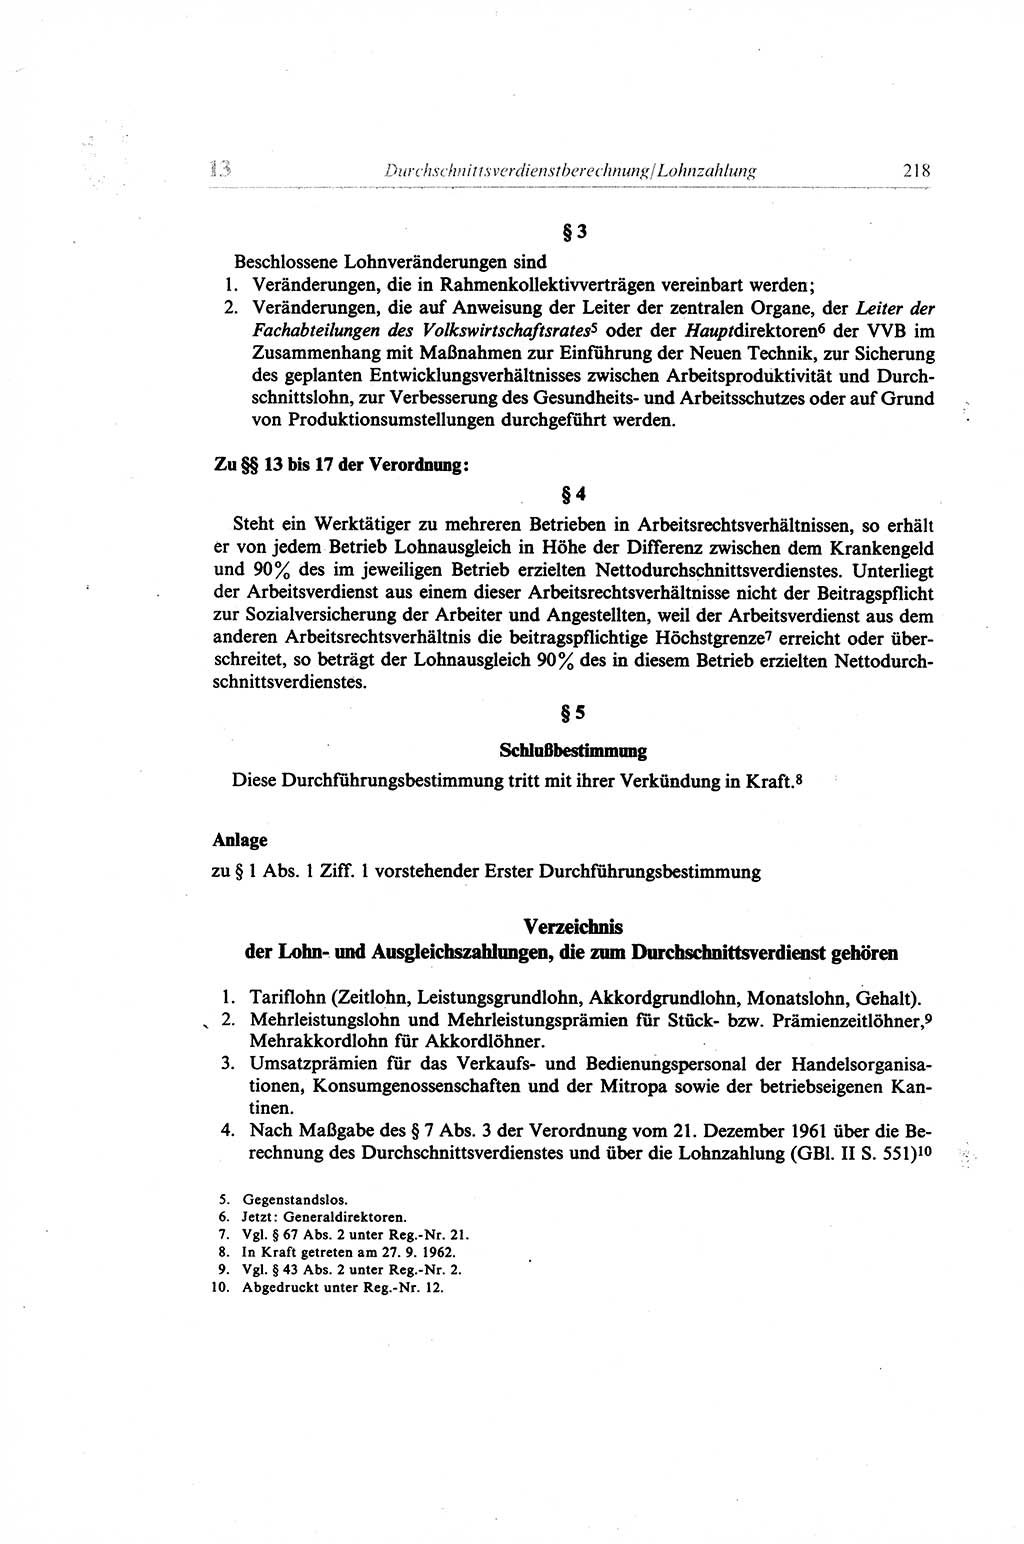 Gesetzbuch der Arbeit (GBA) und andere ausgewählte rechtliche Bestimmungen [Deutsche Demokratische Republik (DDR)] 1968, Seite 218 (GBA DDR 1968, S. 218)